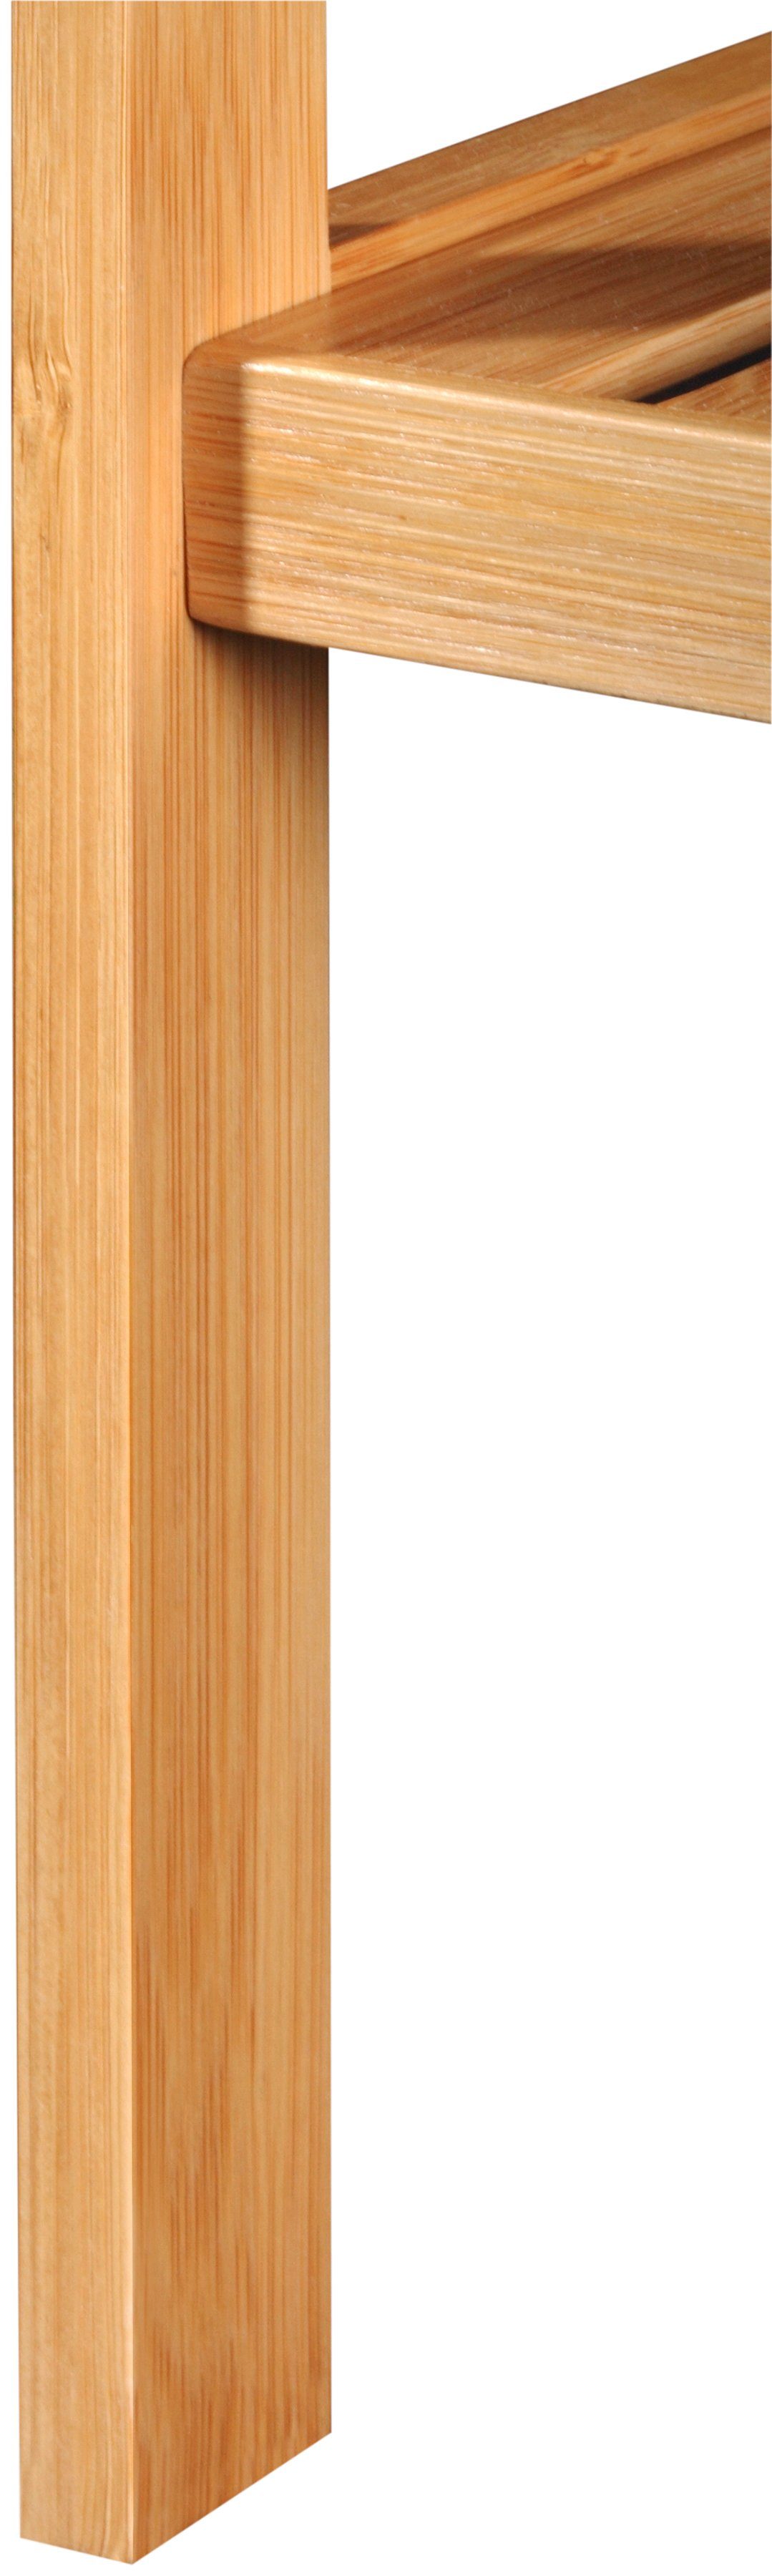 Badregal Bambus, welltime 5 Breite 34 Ablagen cm,